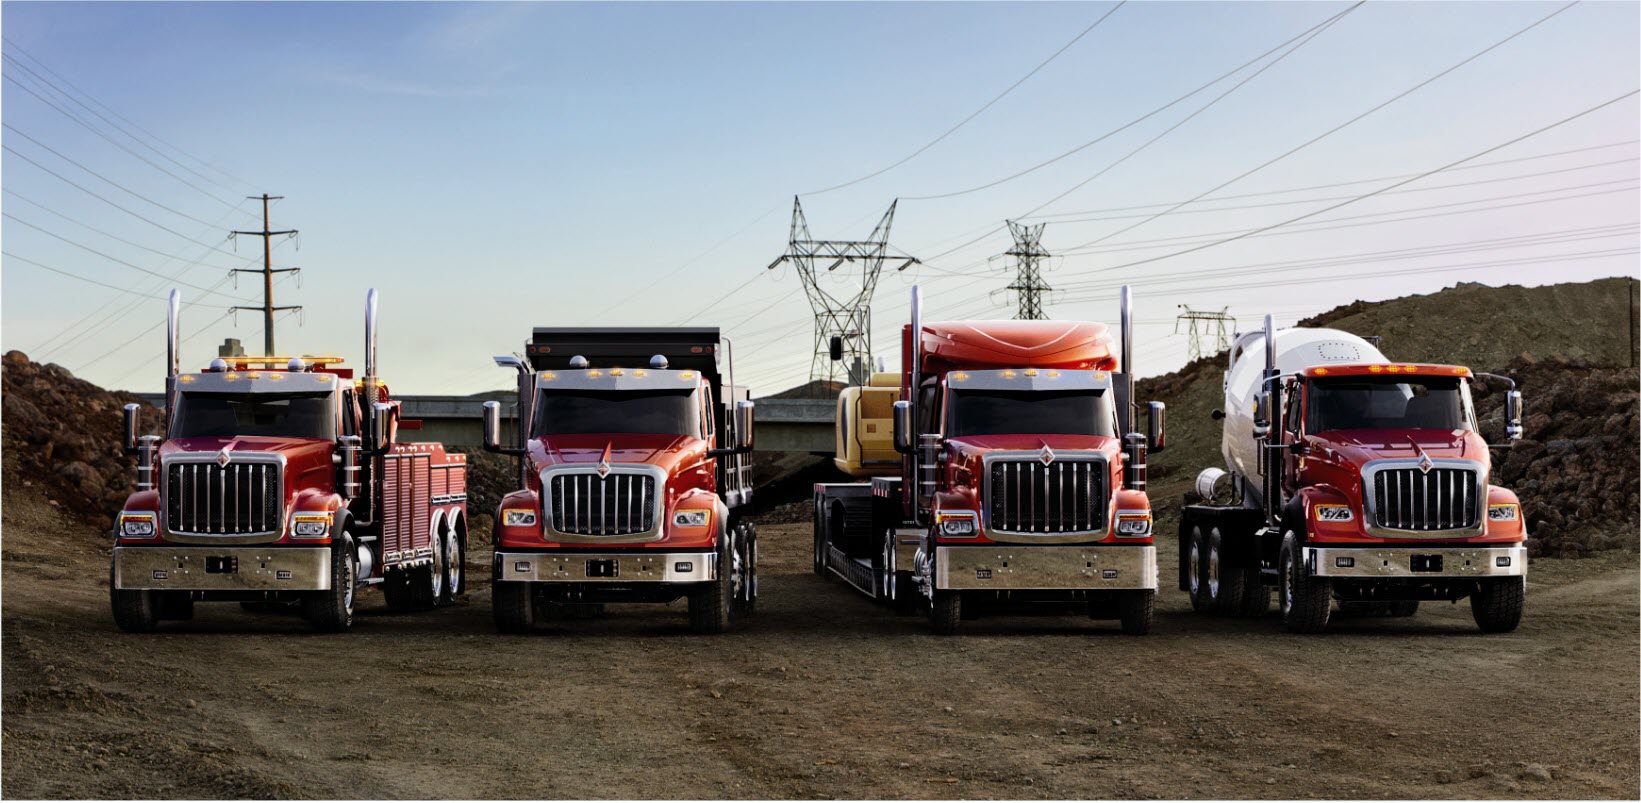 4 Red HX Series Trucks Family